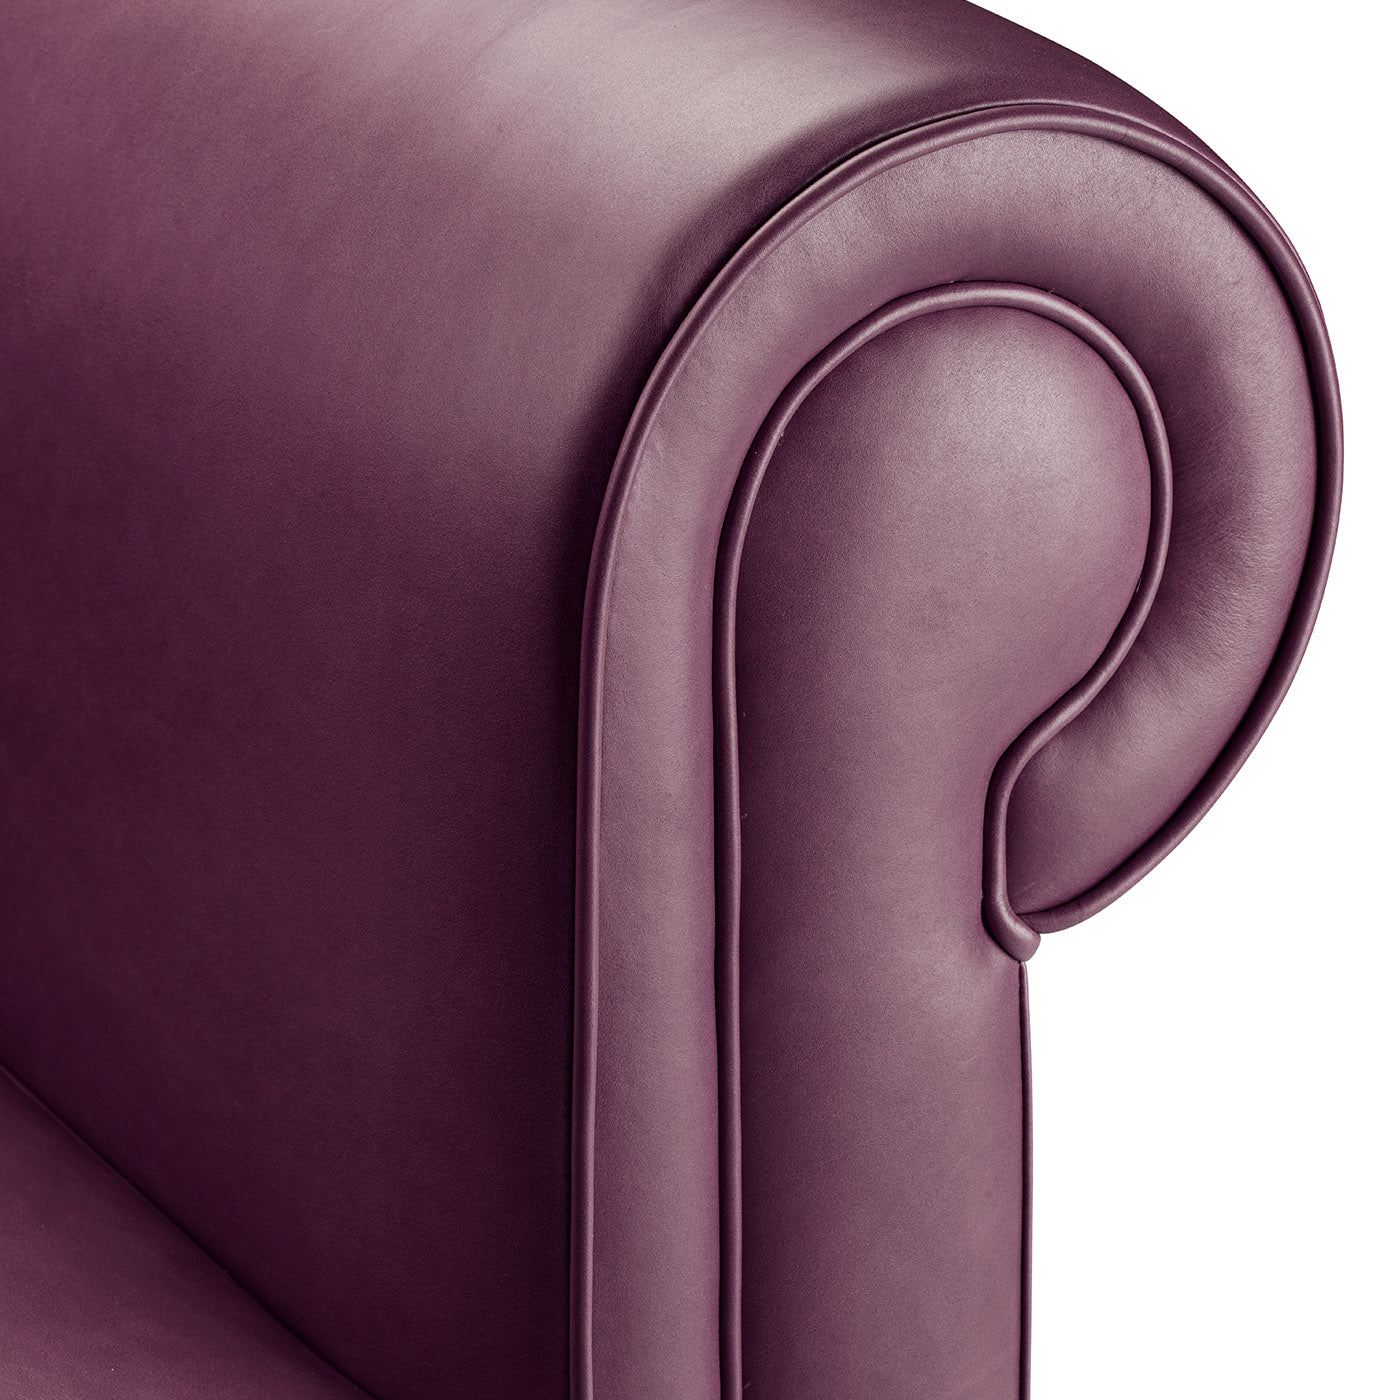 Portofino Purple Armchair by Stefano Giovannoni - Alternative view 1